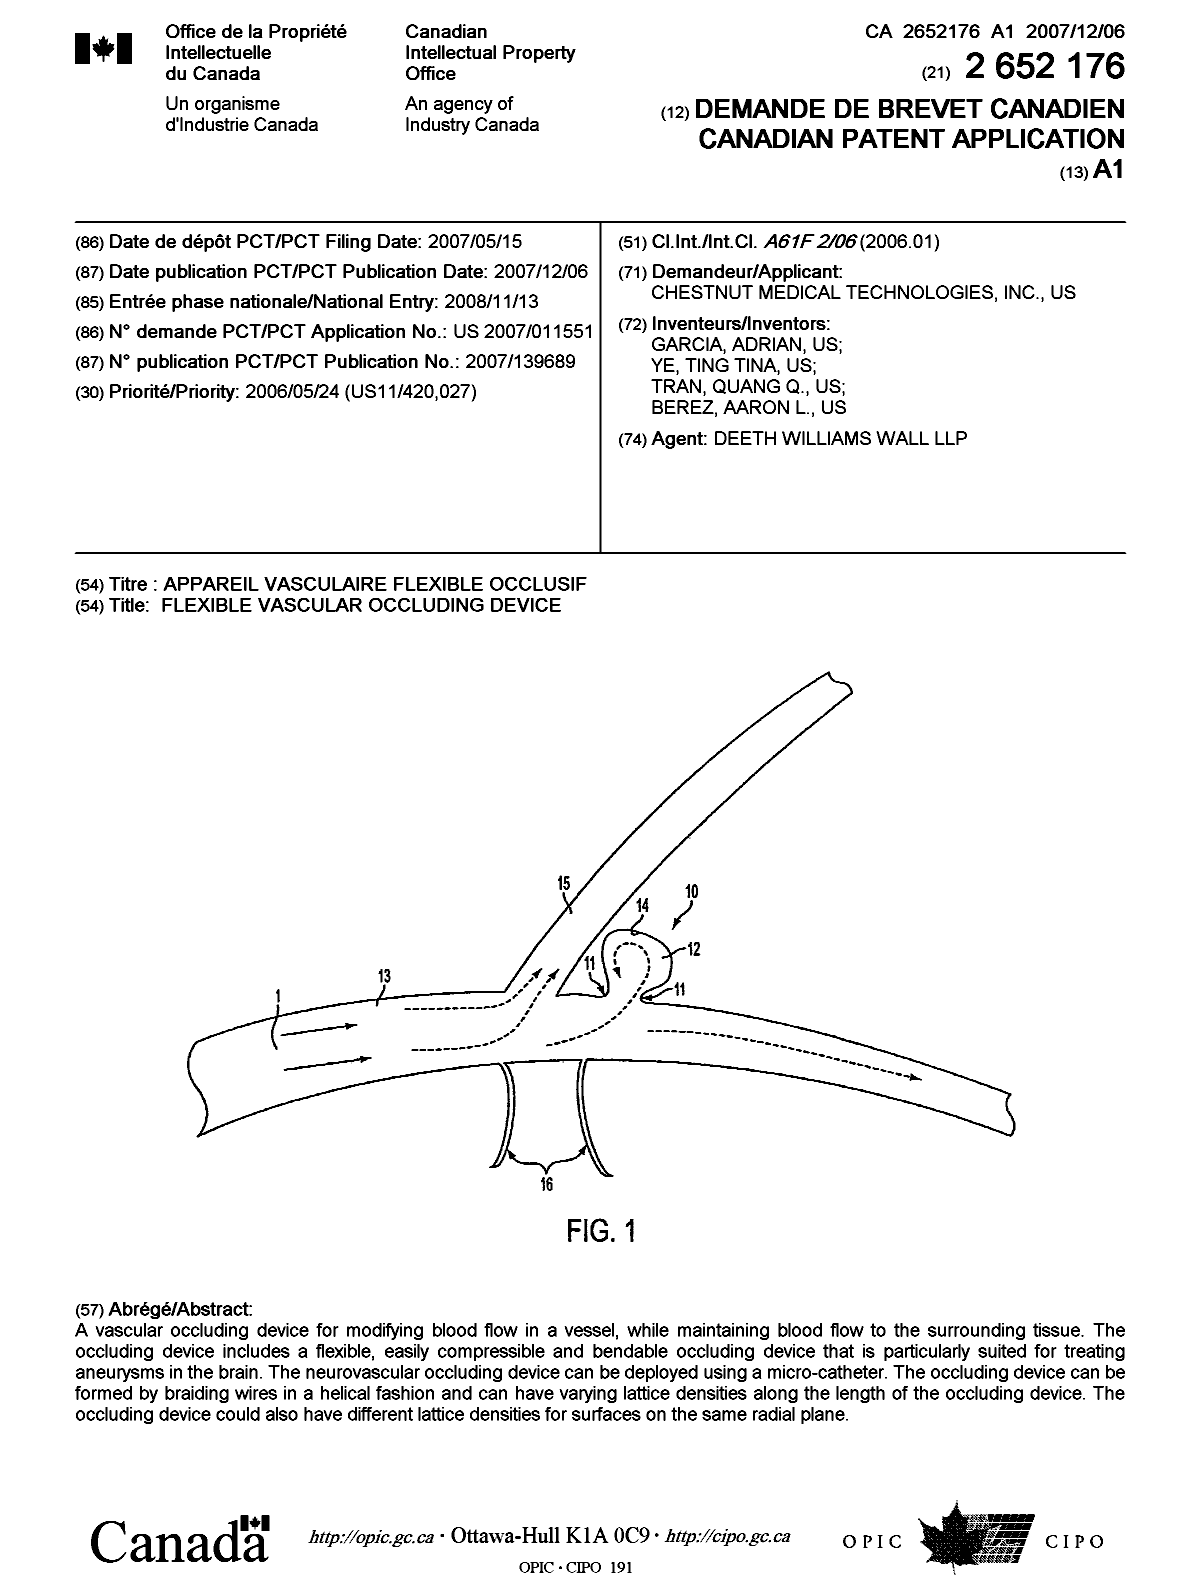 Document de brevet canadien 2652176. Page couverture 20090320. Image 1 de 1